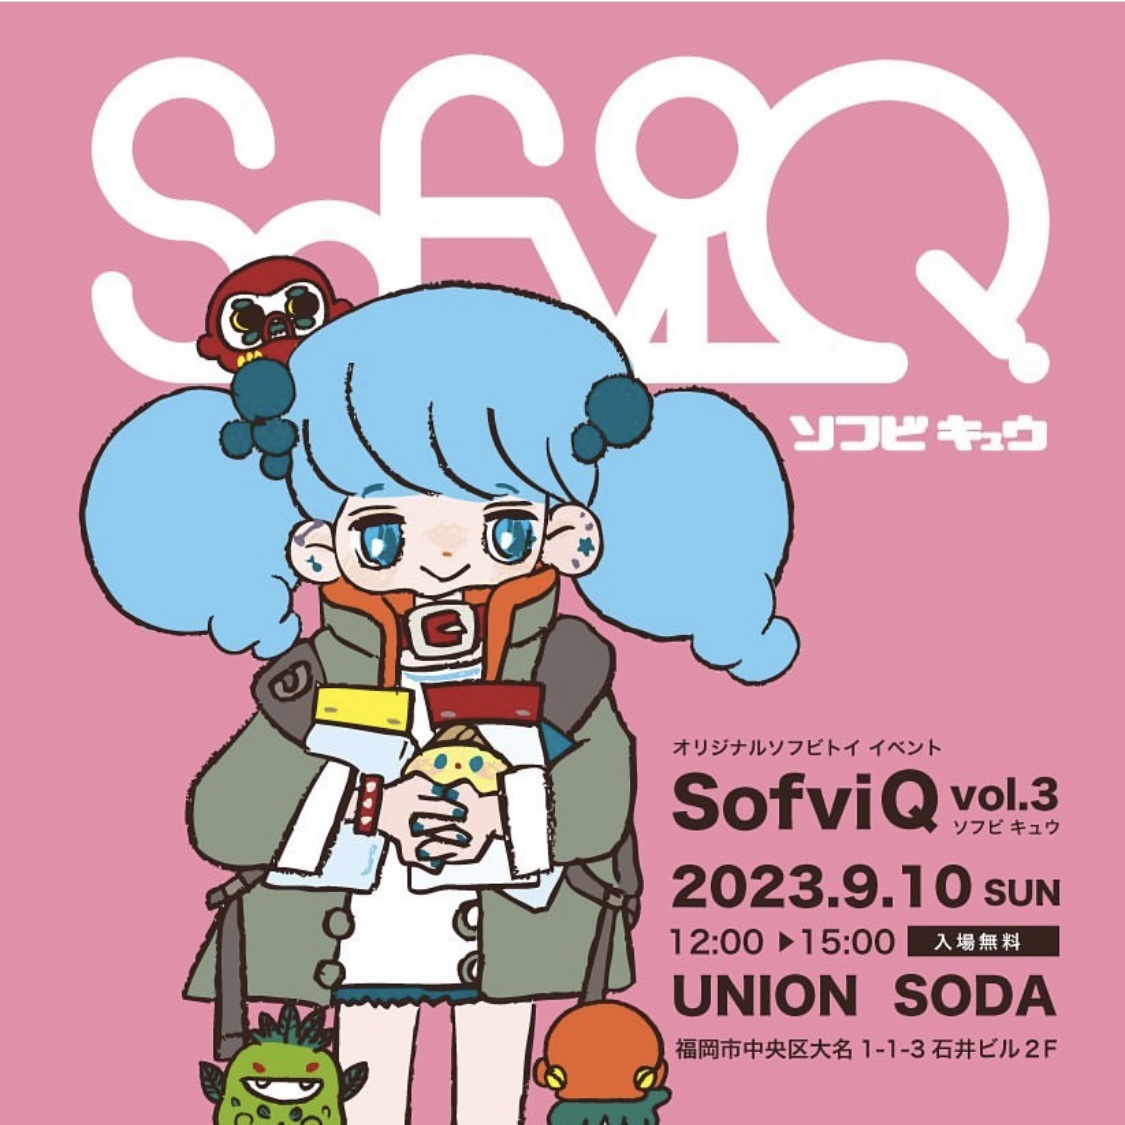 【イベント出展】SofuviQ vol.3